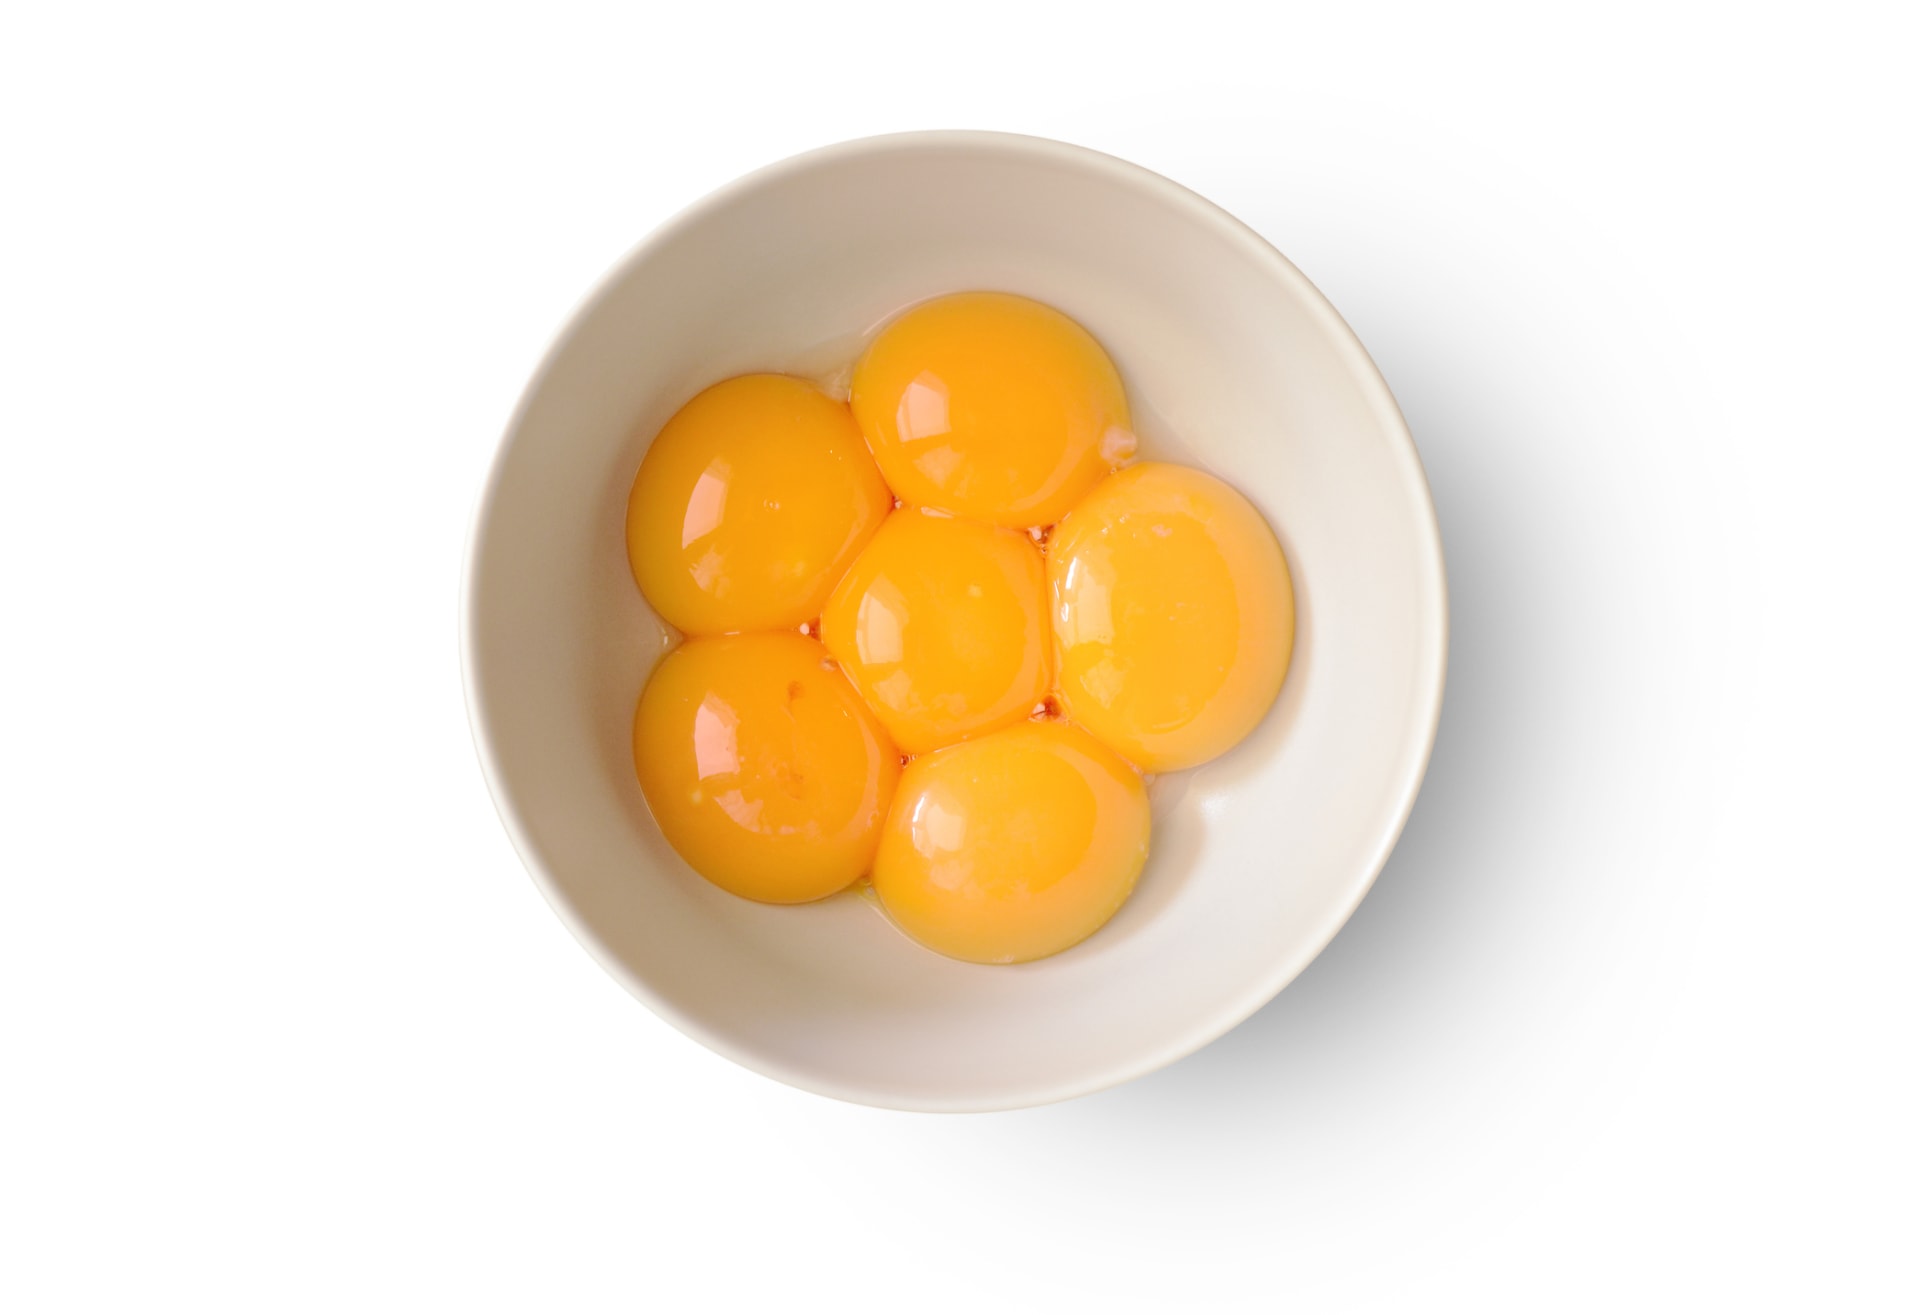 Dalším zdrojem zinku jsou vaječné žloutky. Jeden žloutek obsahuje 5 mg zinku.